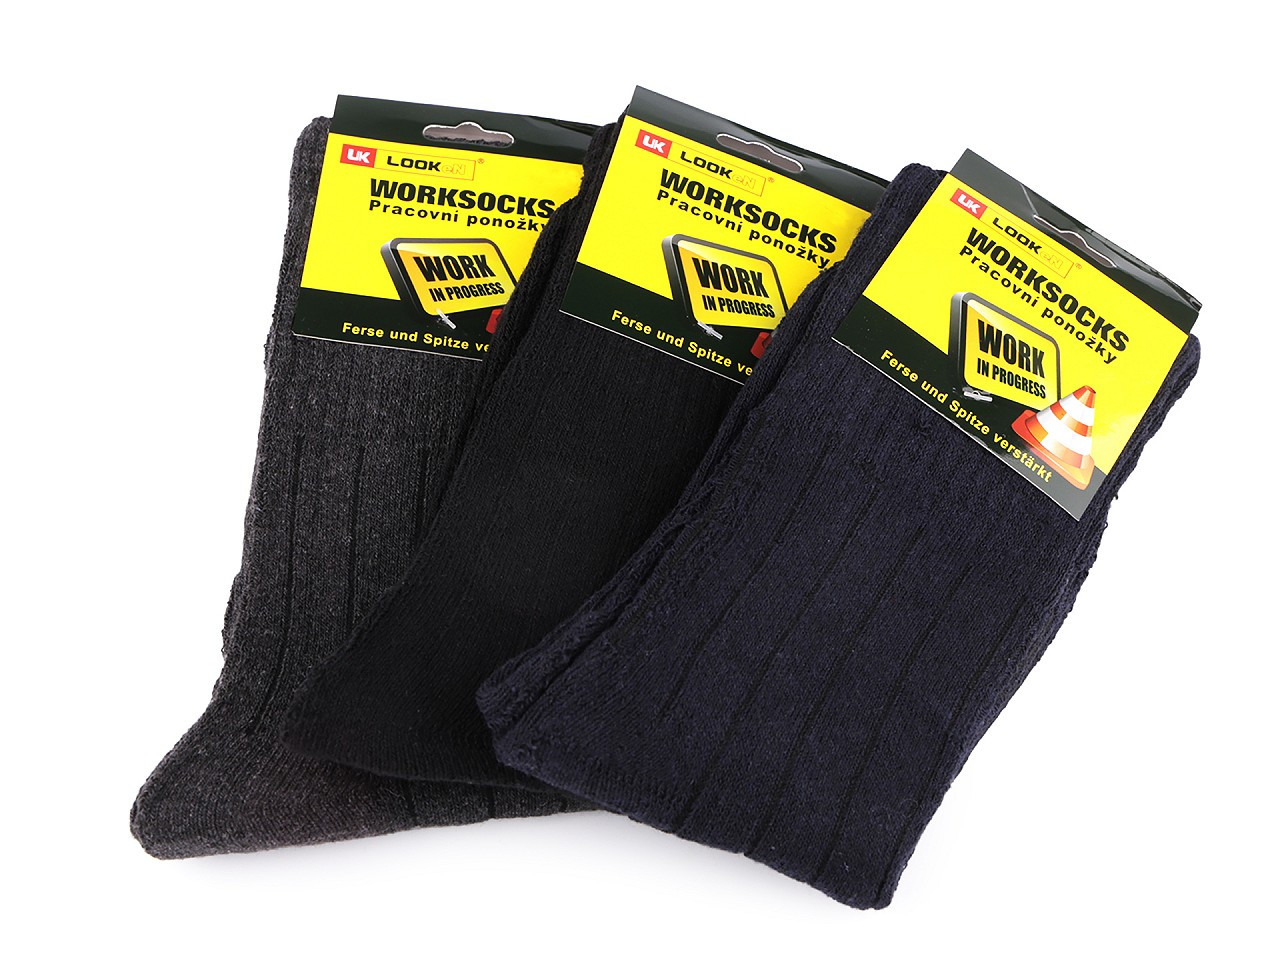 Pánské bavlněné ponožky pracovní, barva 3 (vel. 39-42) mix proužky